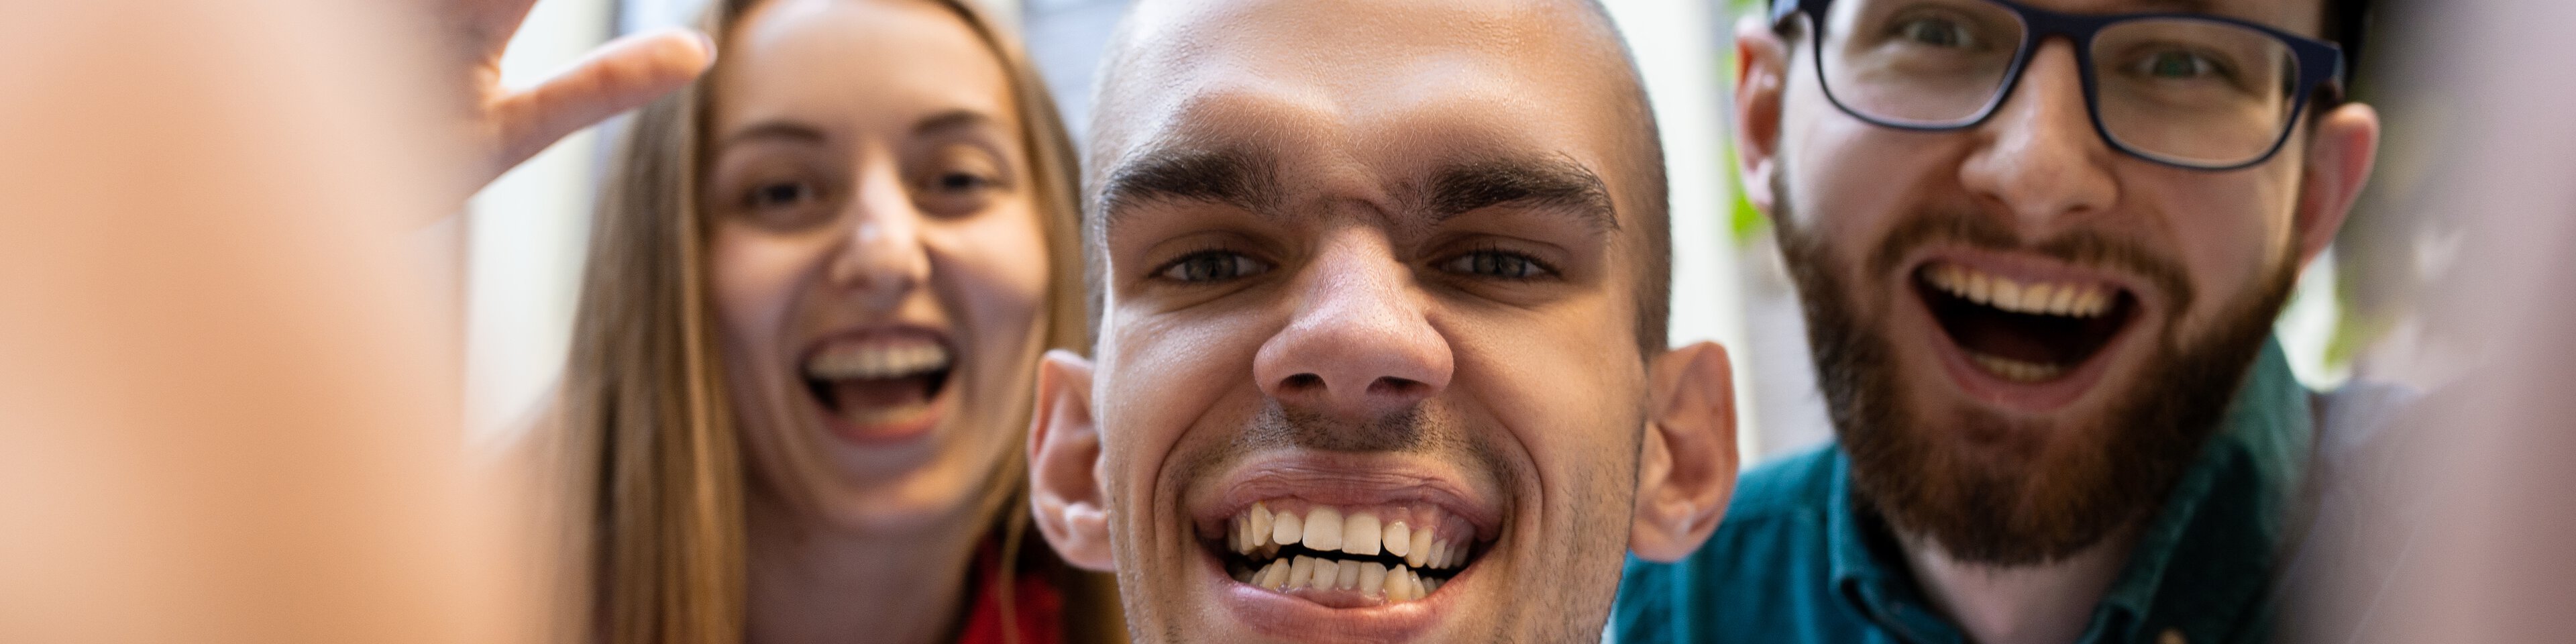 Drei Menschen lachen in Kamera | © Master1305/Shutterstock